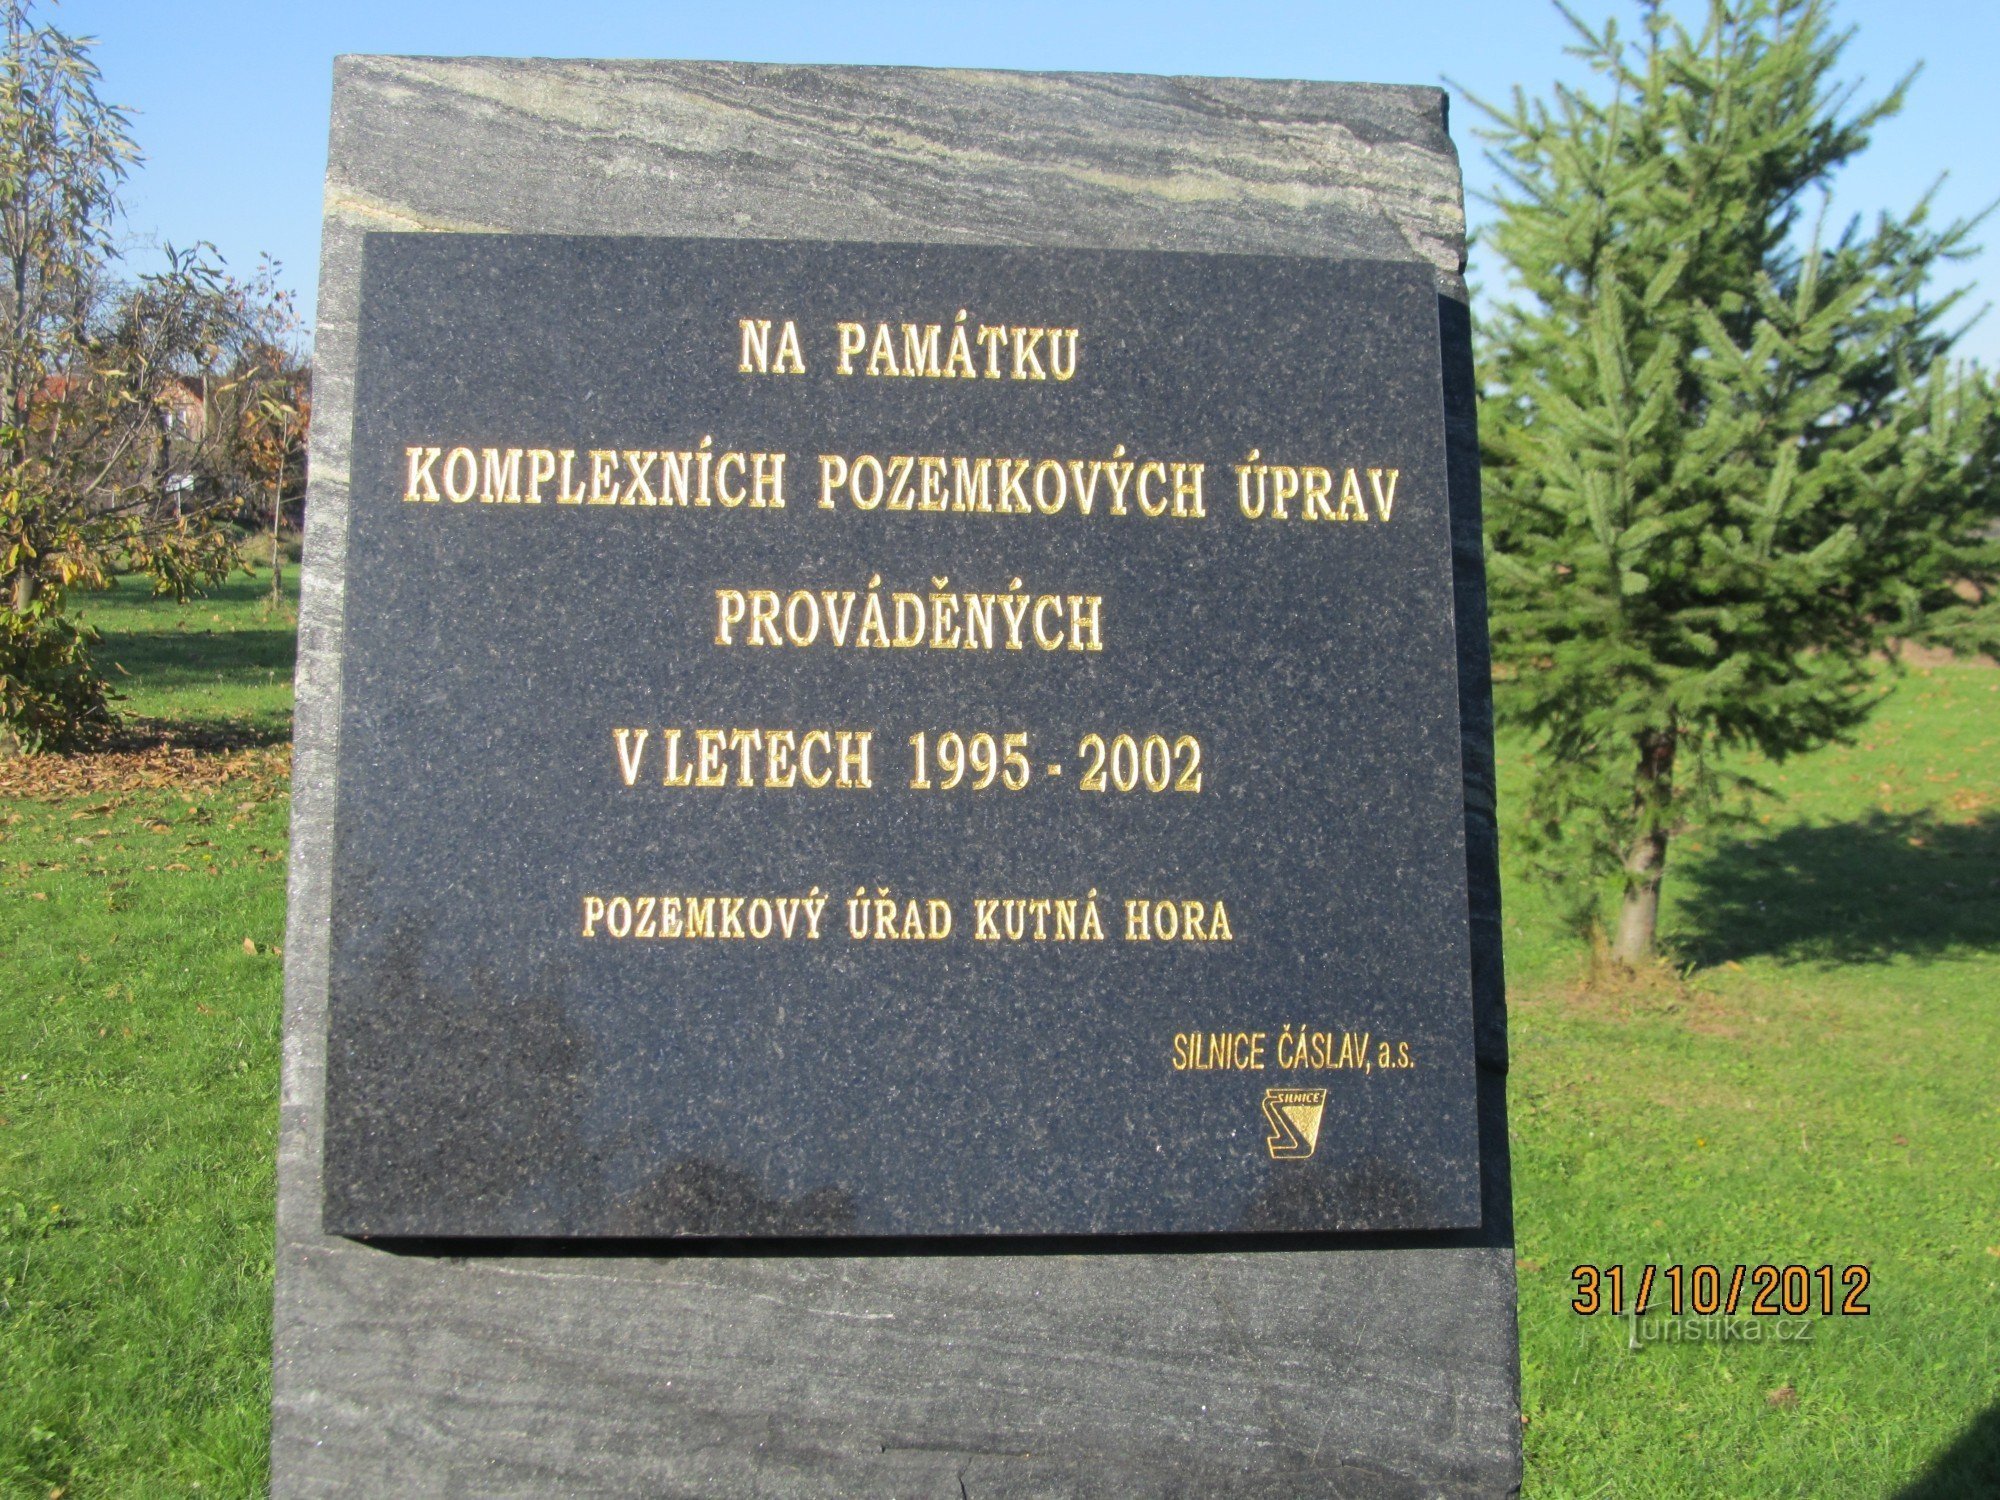 Monumento a Hlízov davanti al cimitero - iscrizione sul monumento